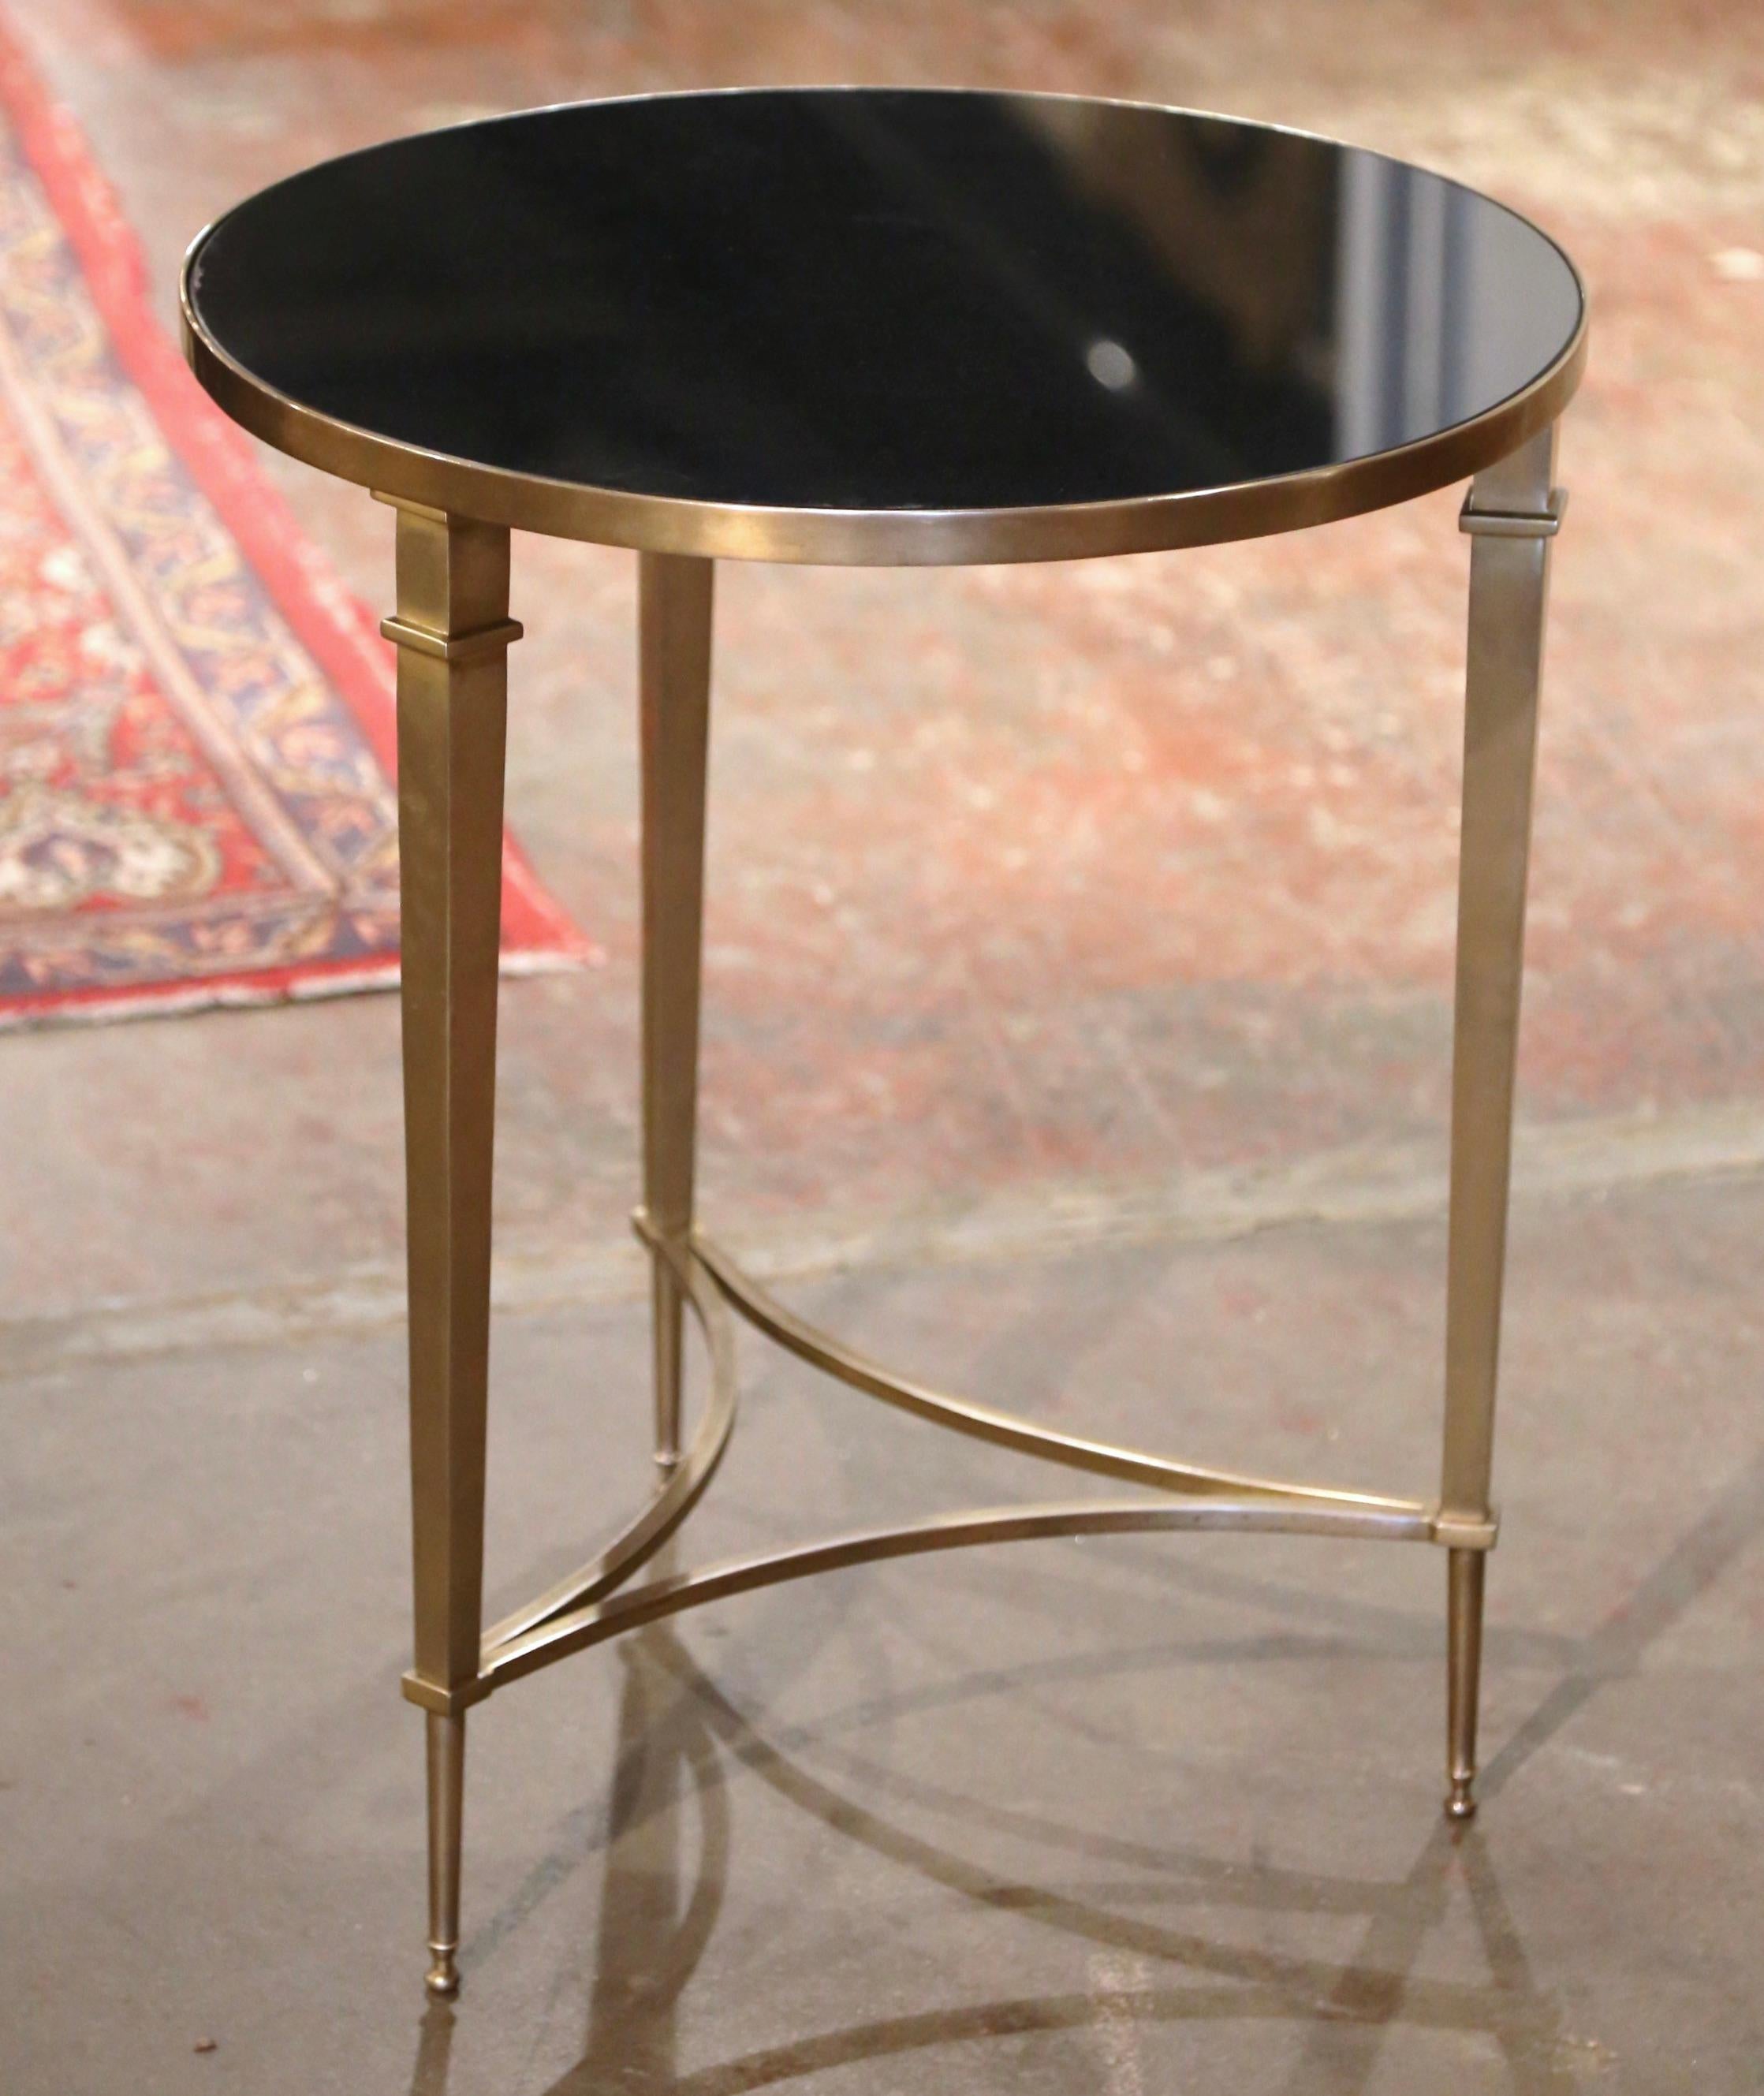 Décorez un salon avec cette élégante table néoclassique en forme de guéridon ancien. Créée en France vers 1950, de forme ronde, la table est soutenue par trois pieds fuselés élancés se terminant par de petits pieds-capitaines. Le fond est également